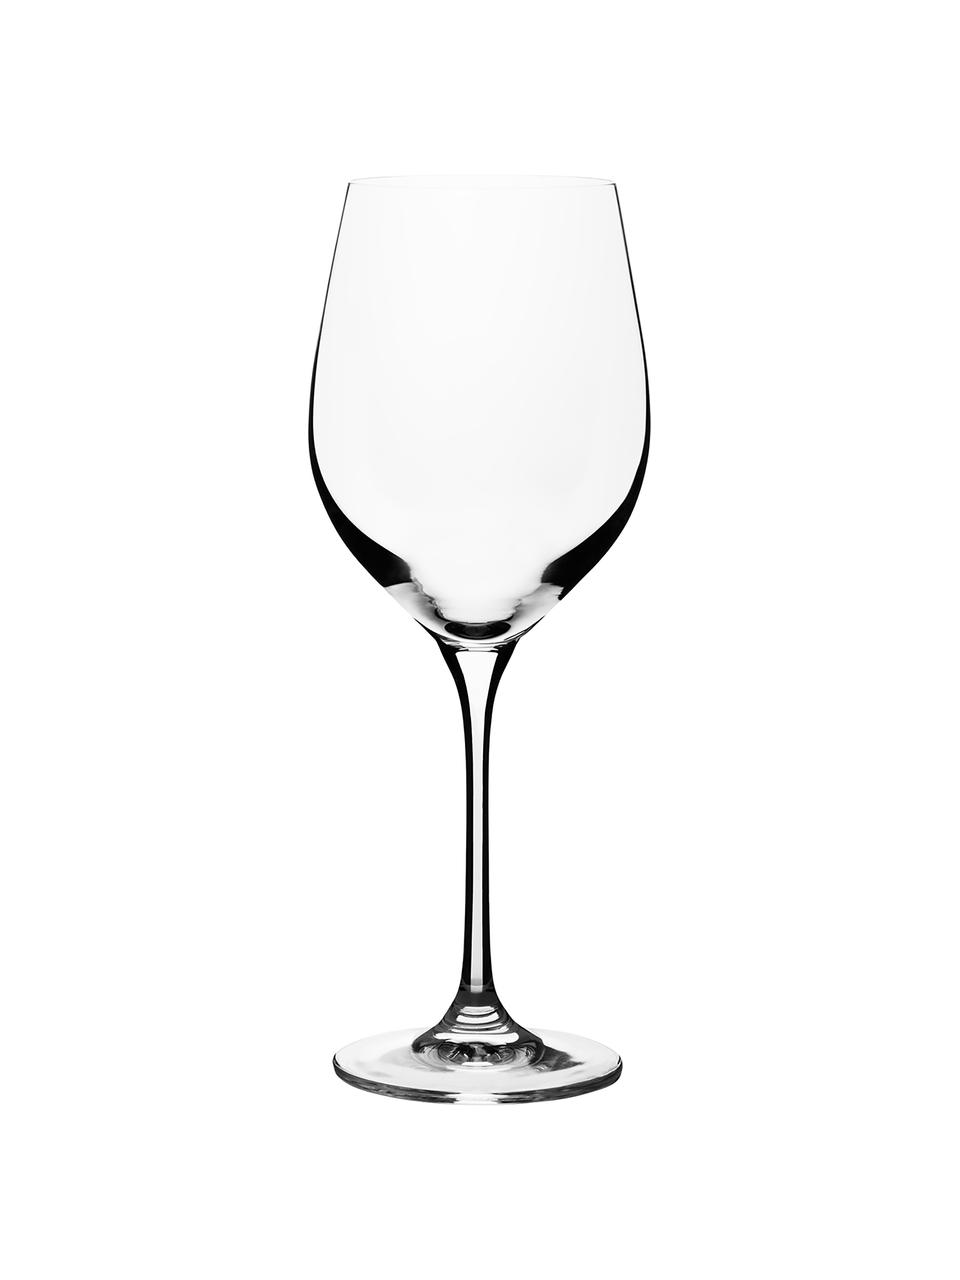 Witte wijnglazen Harmony, 6 stuks, Edele glans - het kristalglas breekt het licht en dit creëert een sprankelend effect, waardoor elk wijnglas als  een bijzonder moment kan worden ervaren., Transparant, Ø 9 x H 22 cm